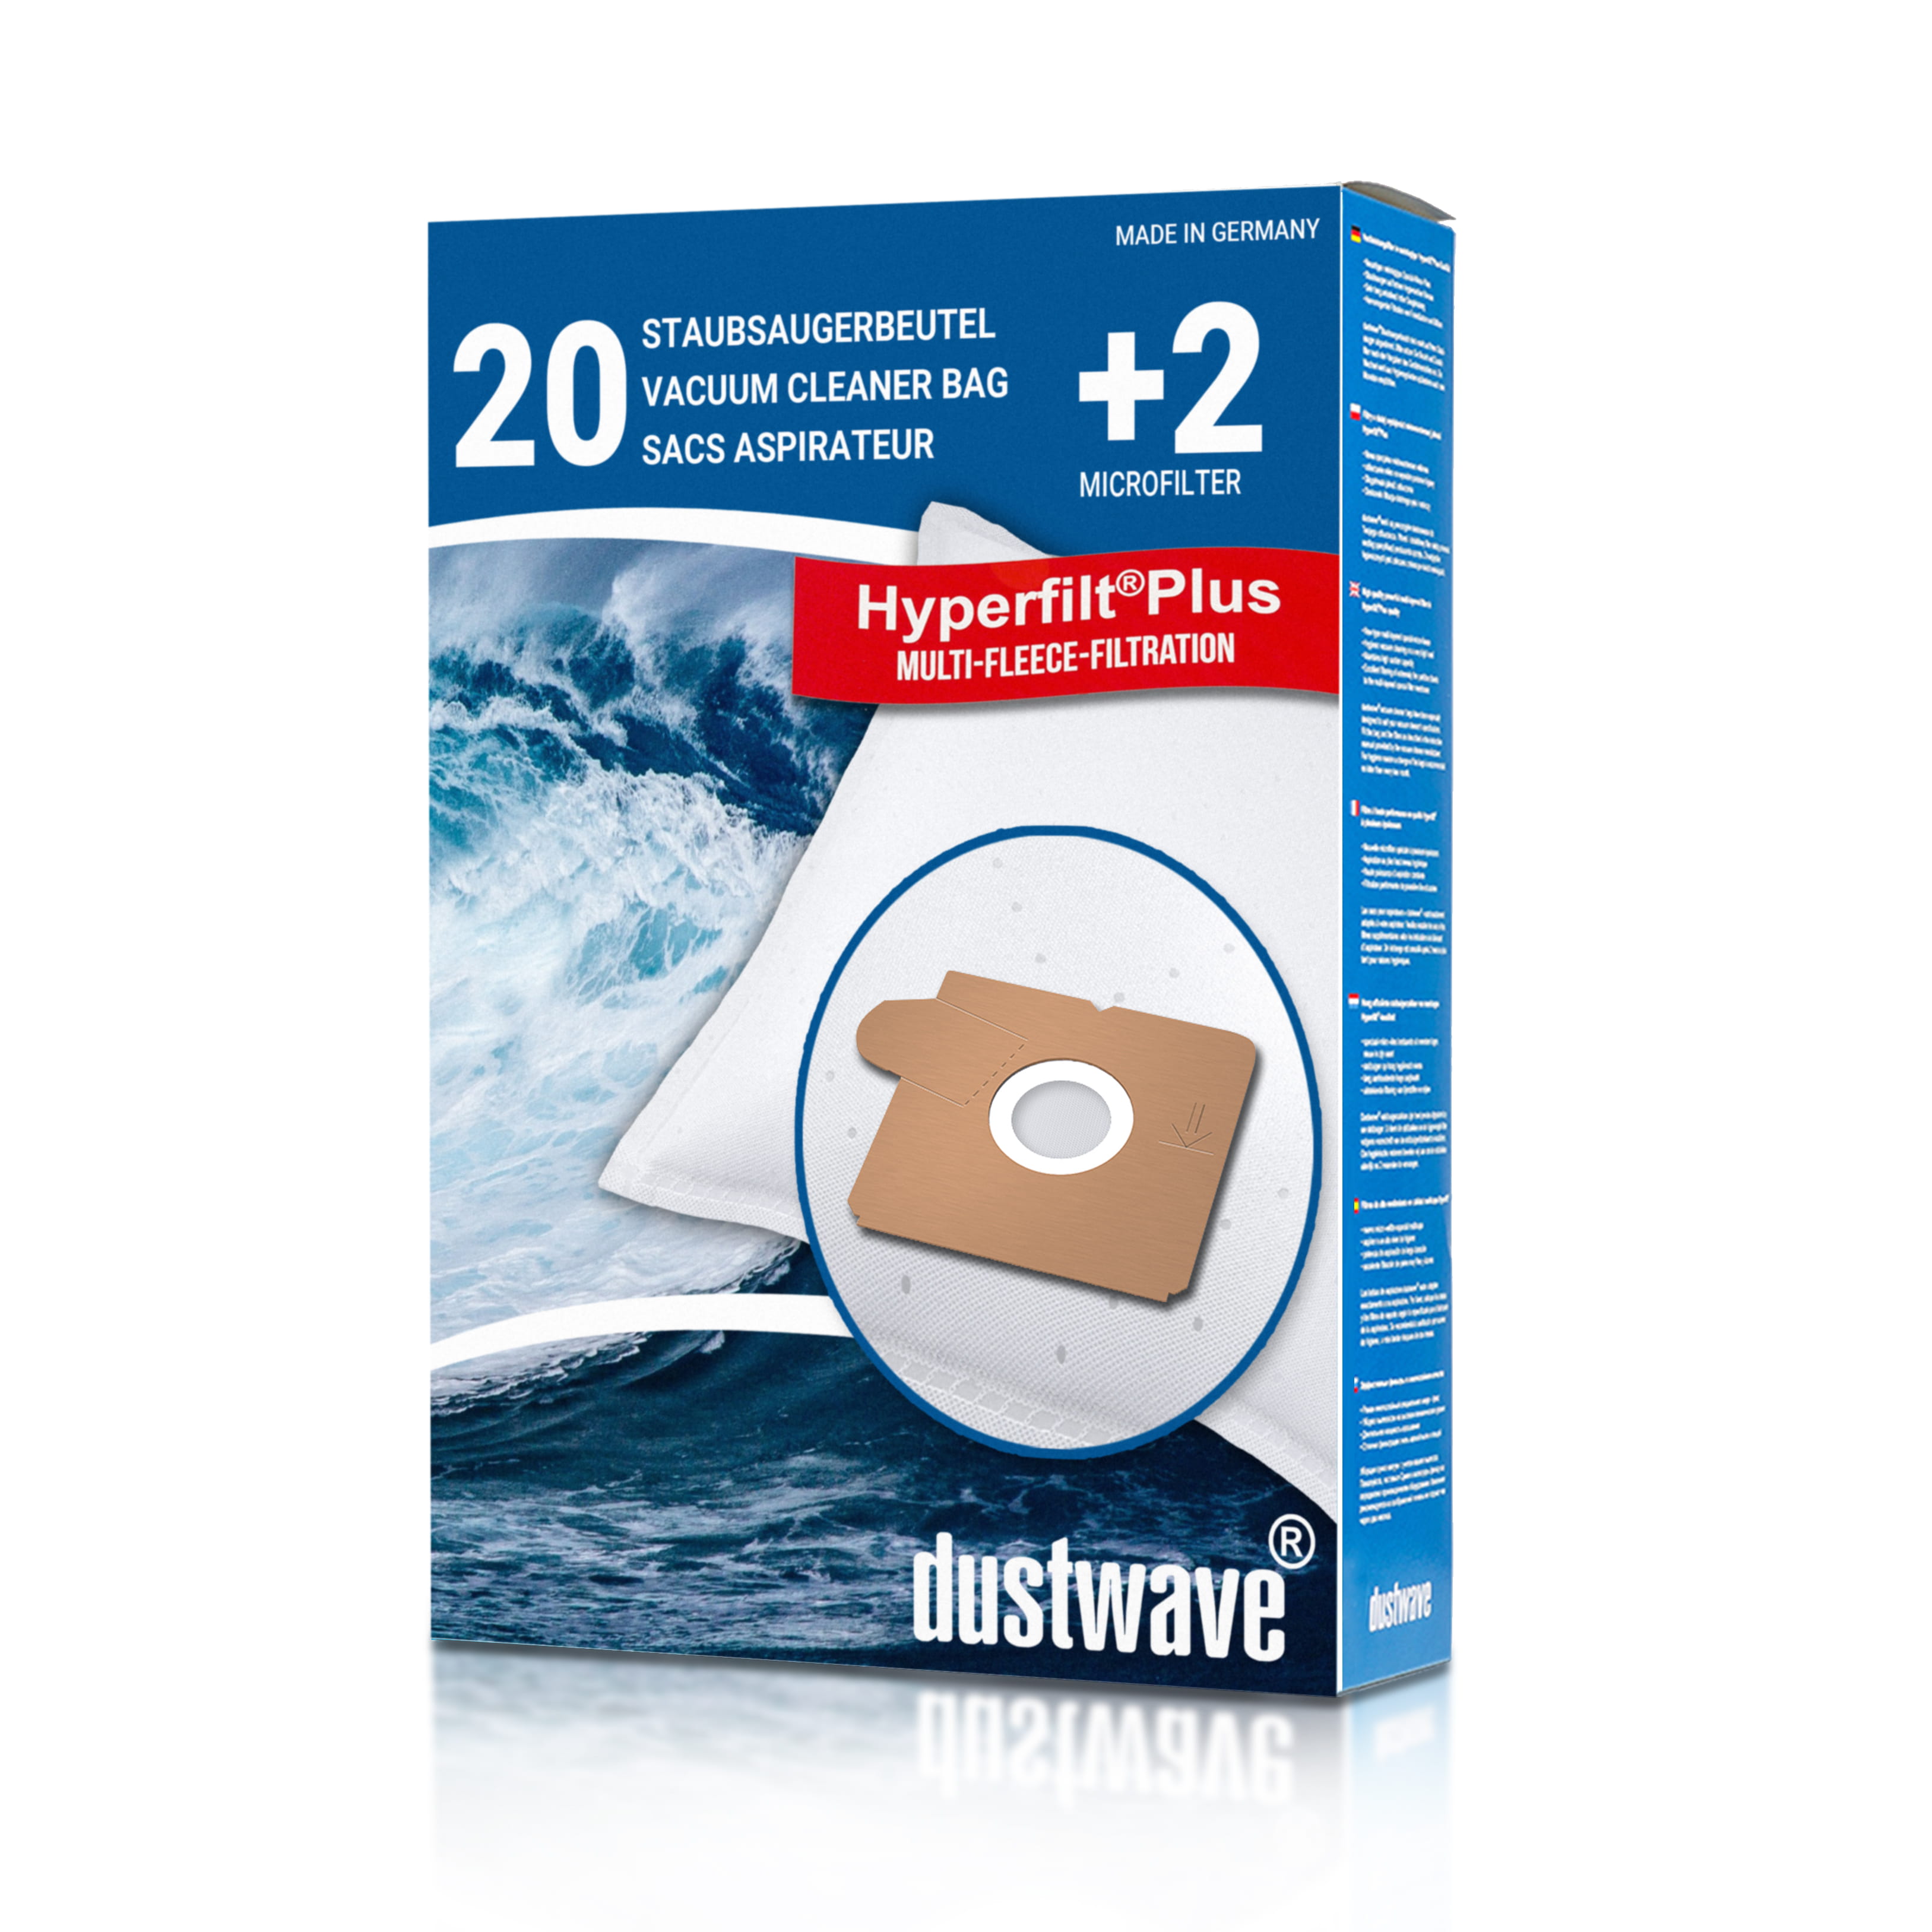 Dustwave® 20 Staubsaugerbeutel für AEG Vampyrino 160.0 - hocheffizient mit Hygieneverschluss - Made in Germany